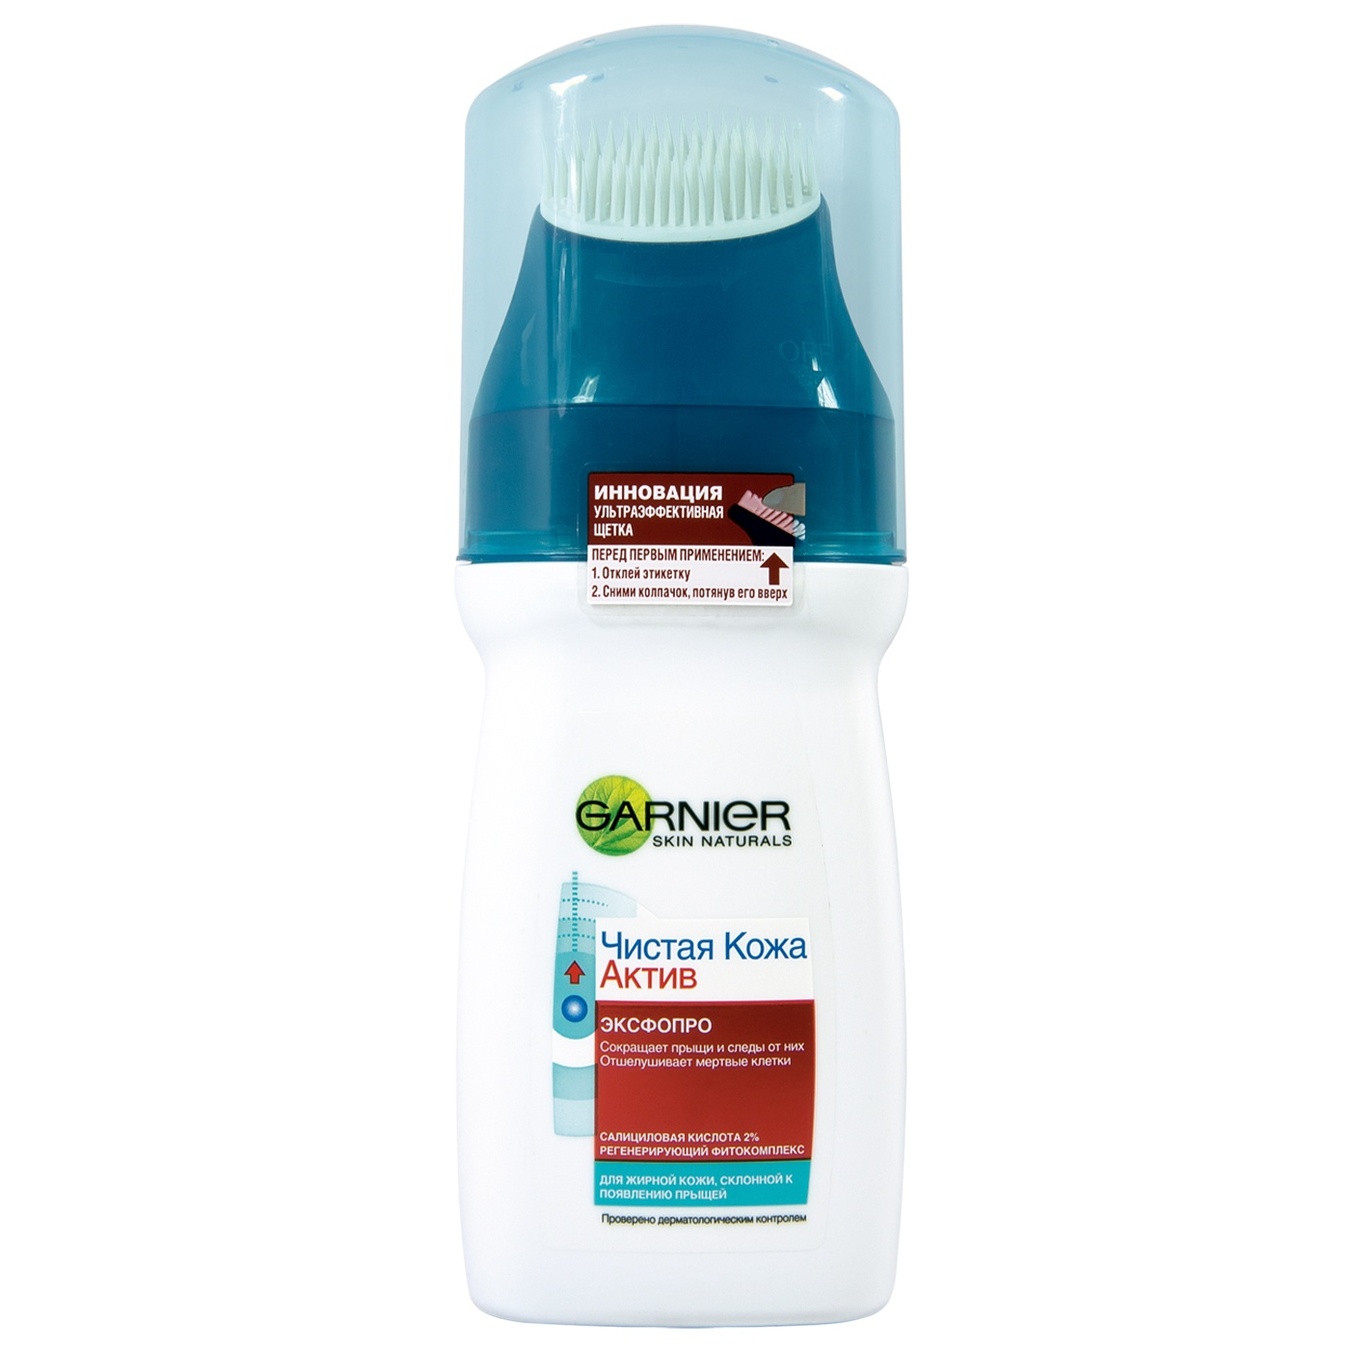 Garnier Skin Naturals ExfoPro Active Cleansing Gel 150ml